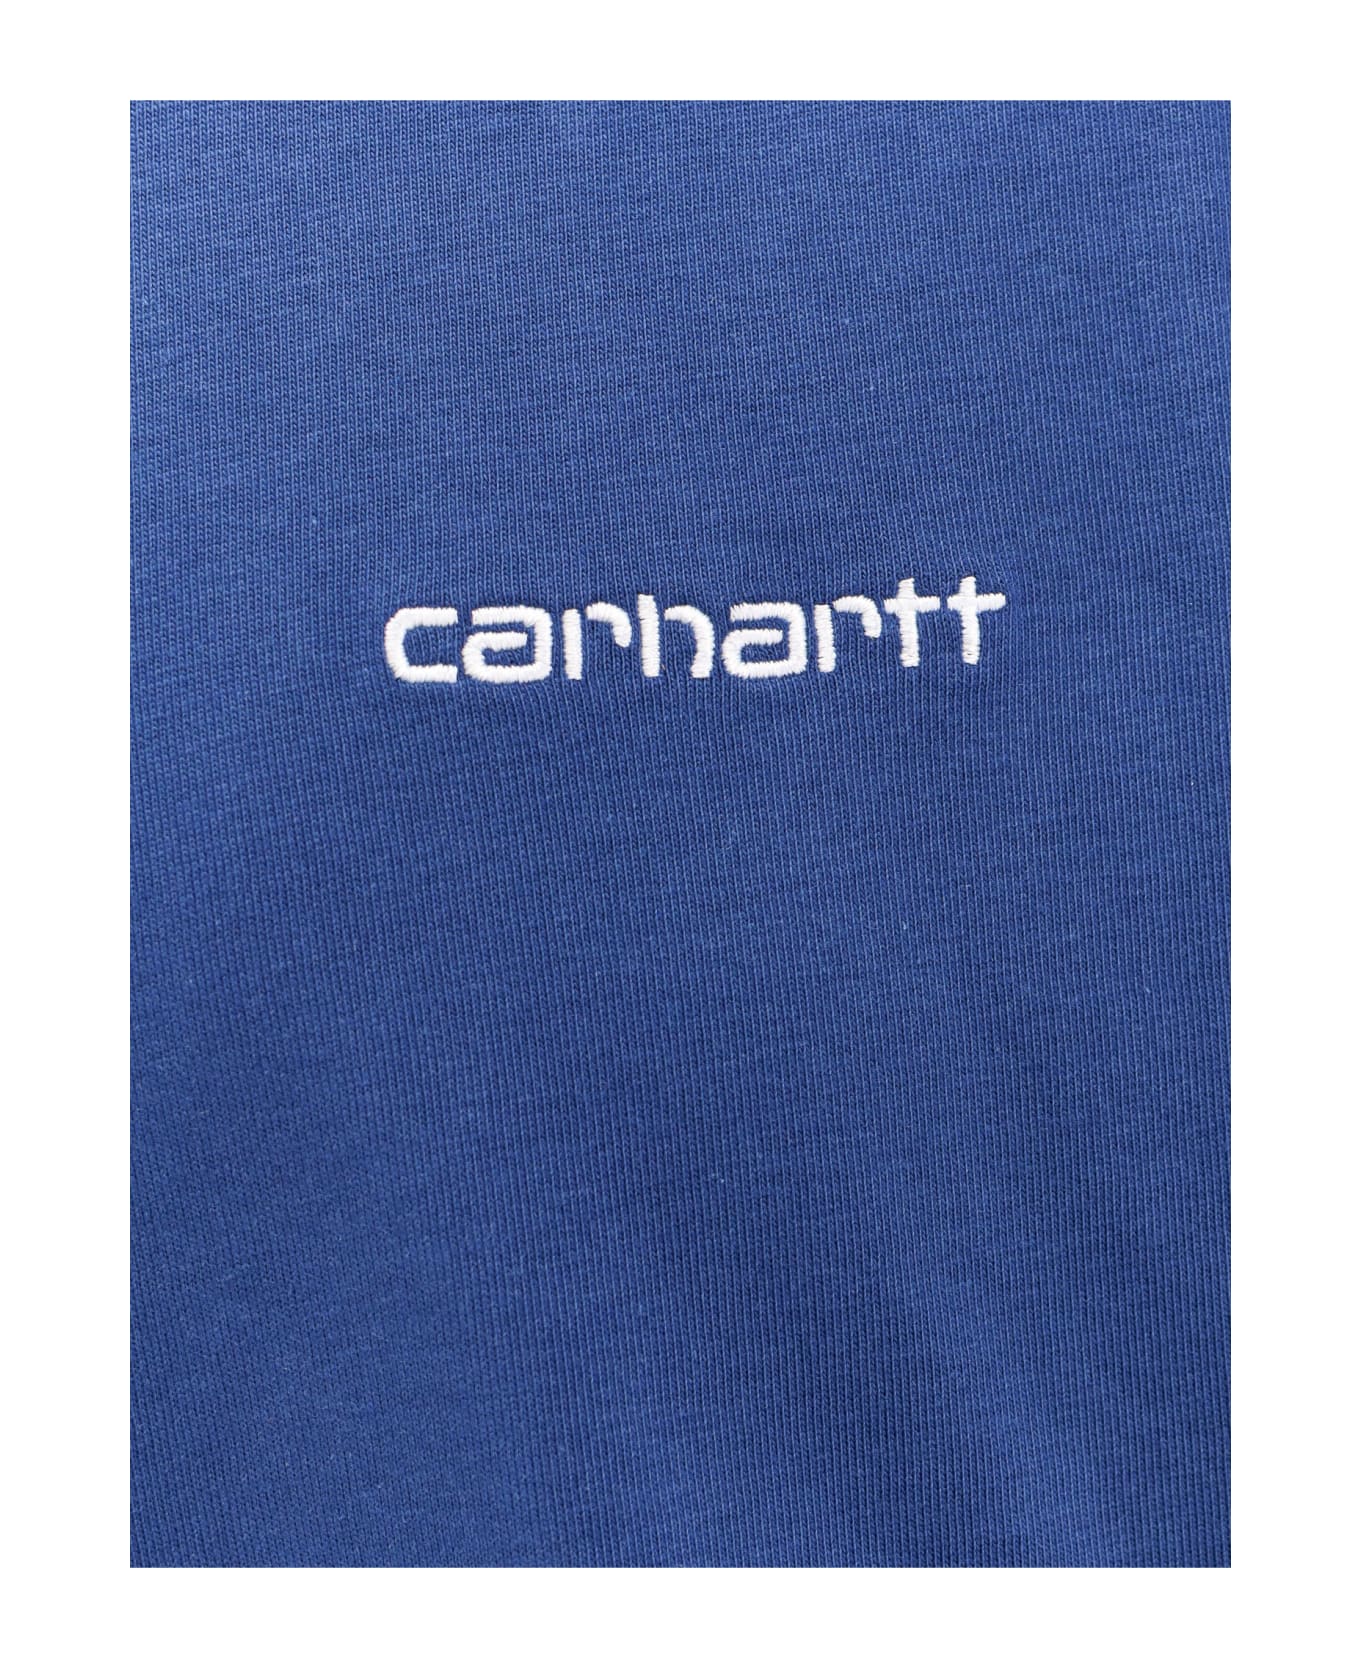 Carhartt Script Embroidery T-shirt - Blue